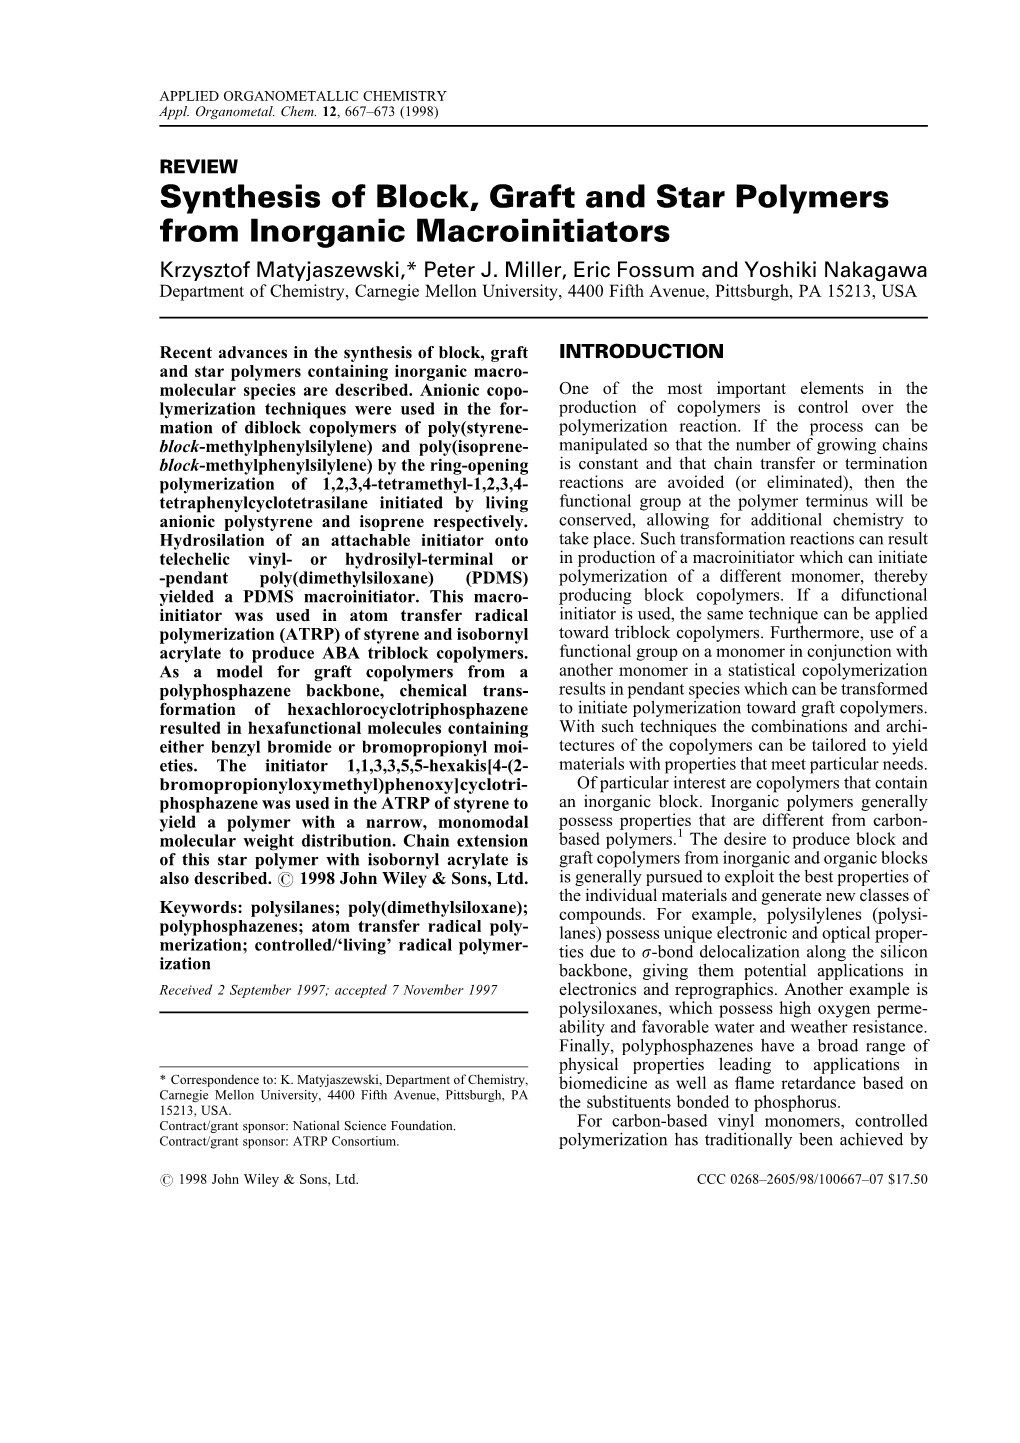 Synthesis of Block, Graft and Star Polymers from Inorganic Macroinitiators Krzysztof Matyjaszewski,* Peter J